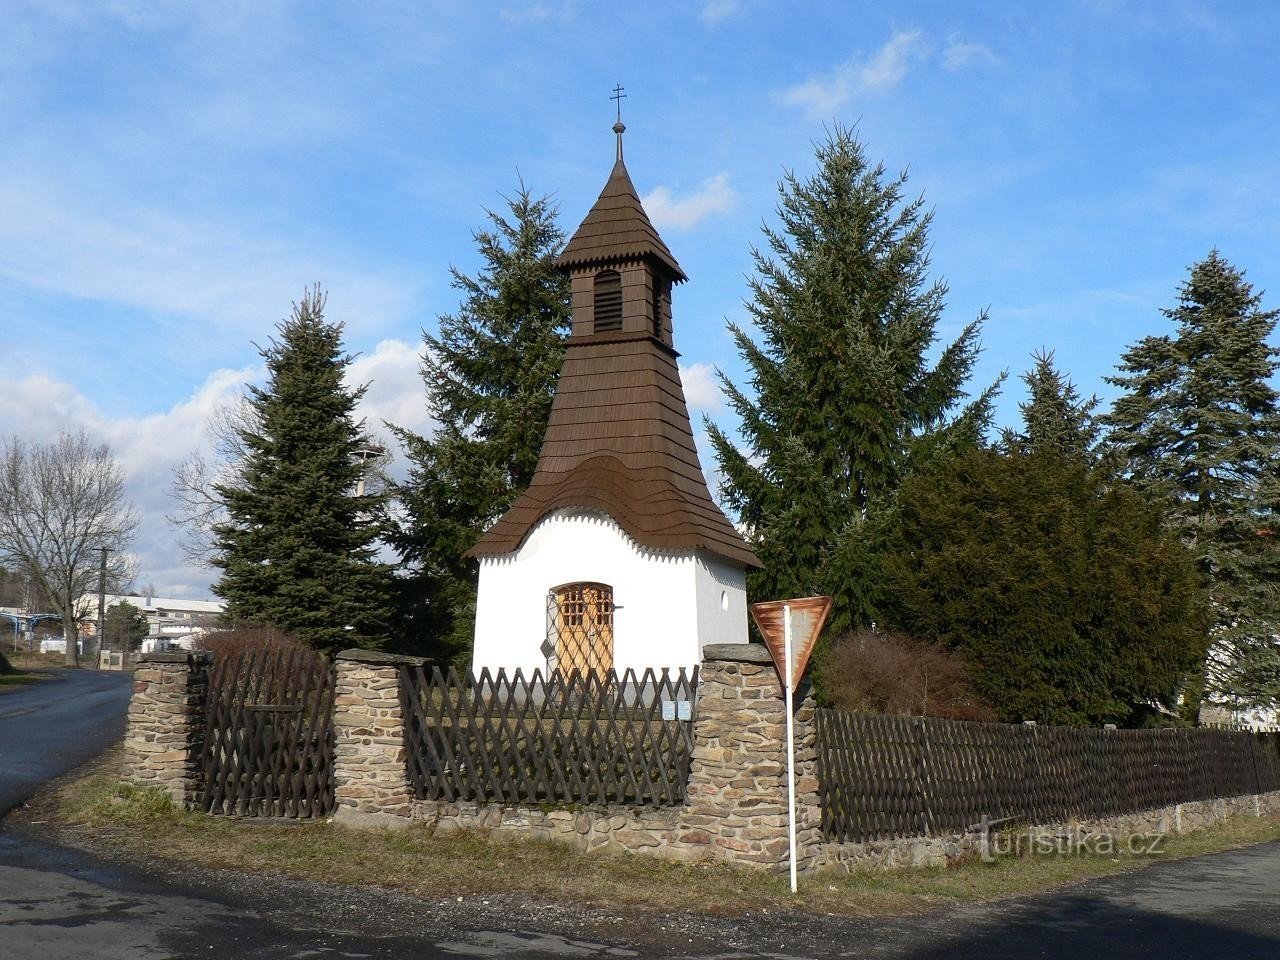 Dražovice, lille park med et kapel